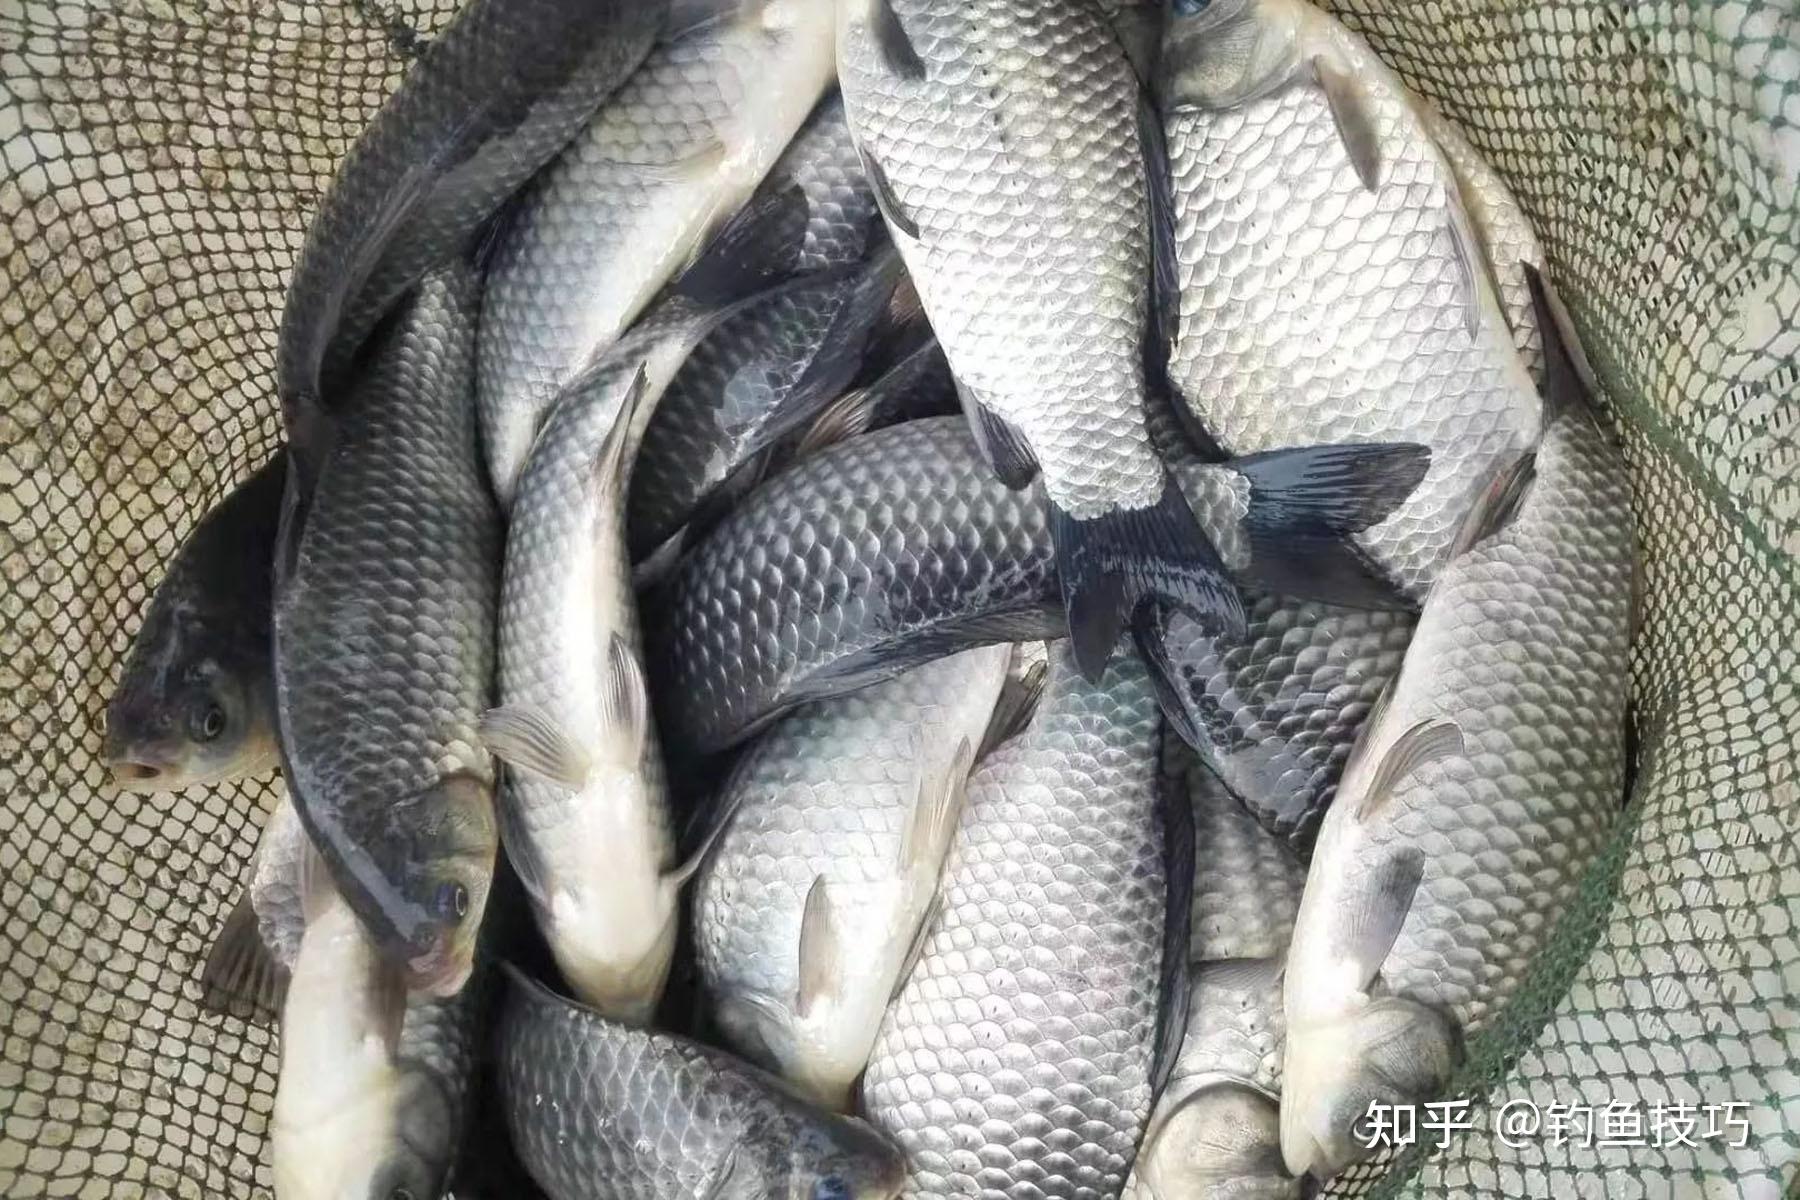 222.鲫-中国南方淡水鱼类-图片